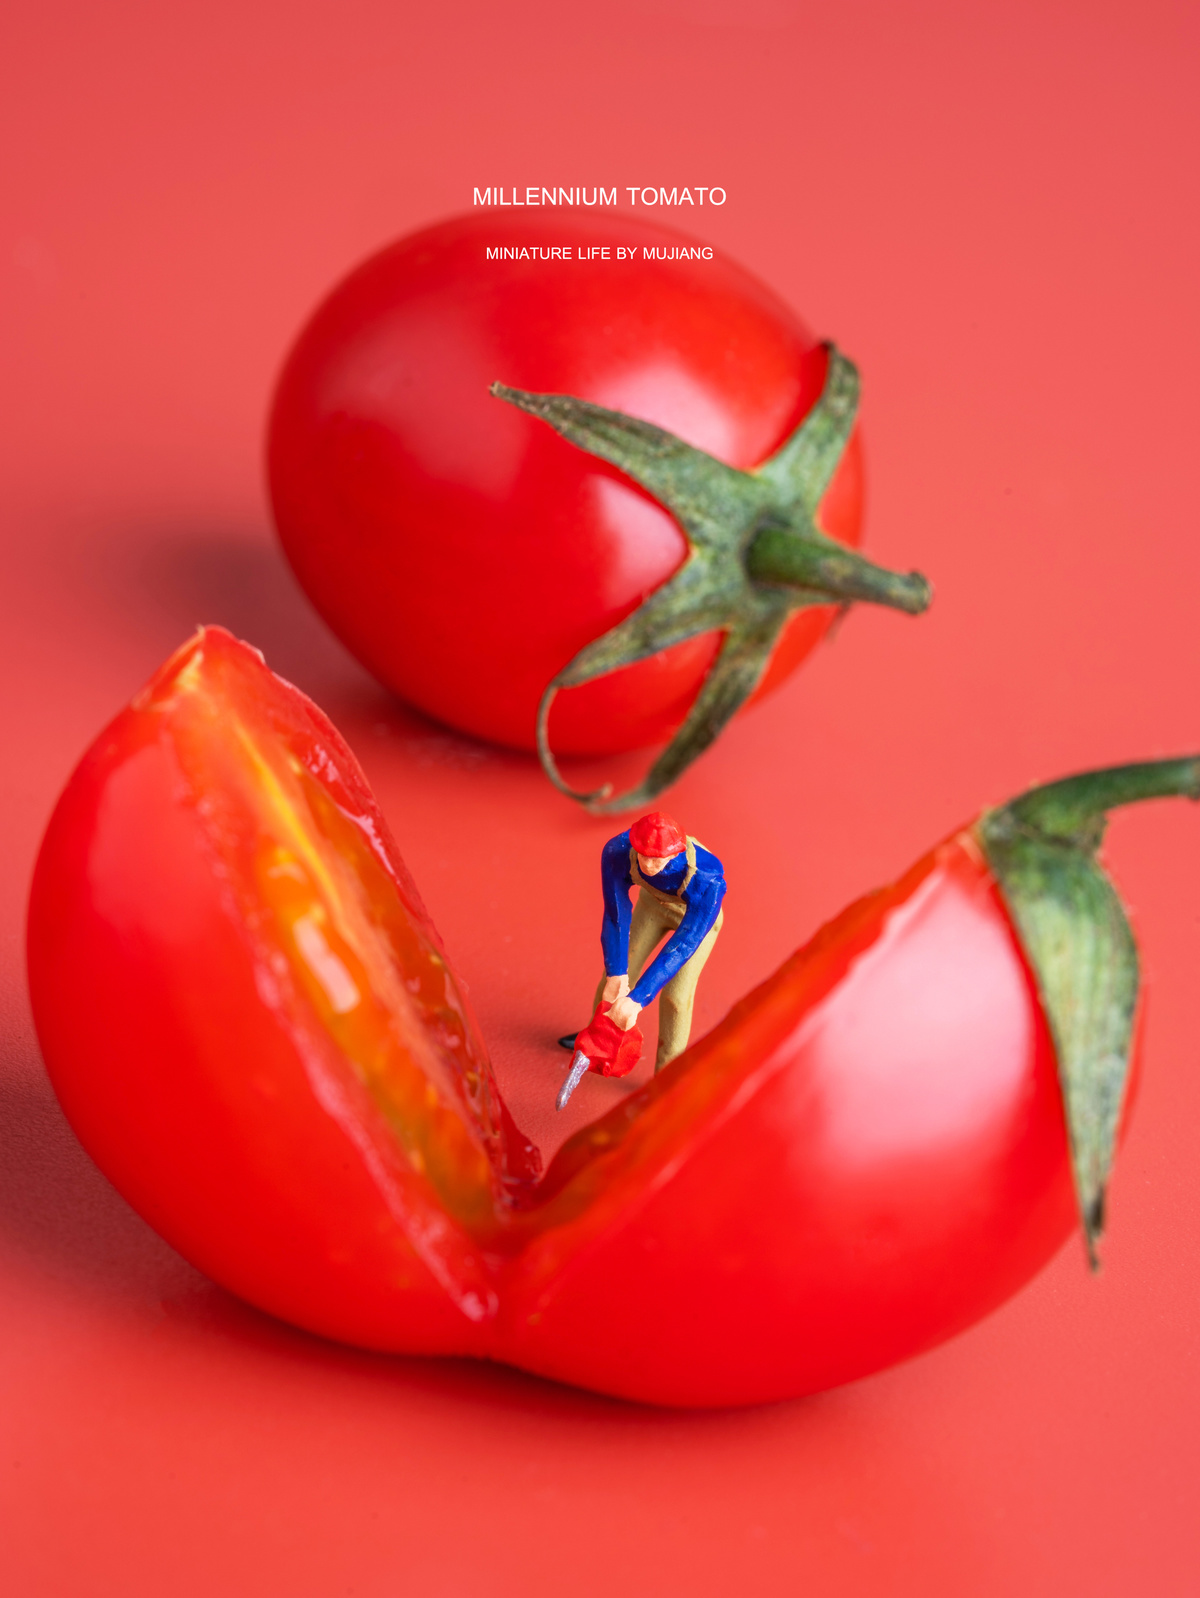 一个站在红色背景上的人物迷你塑像 旁边有一个在番茄上的小人塑像。